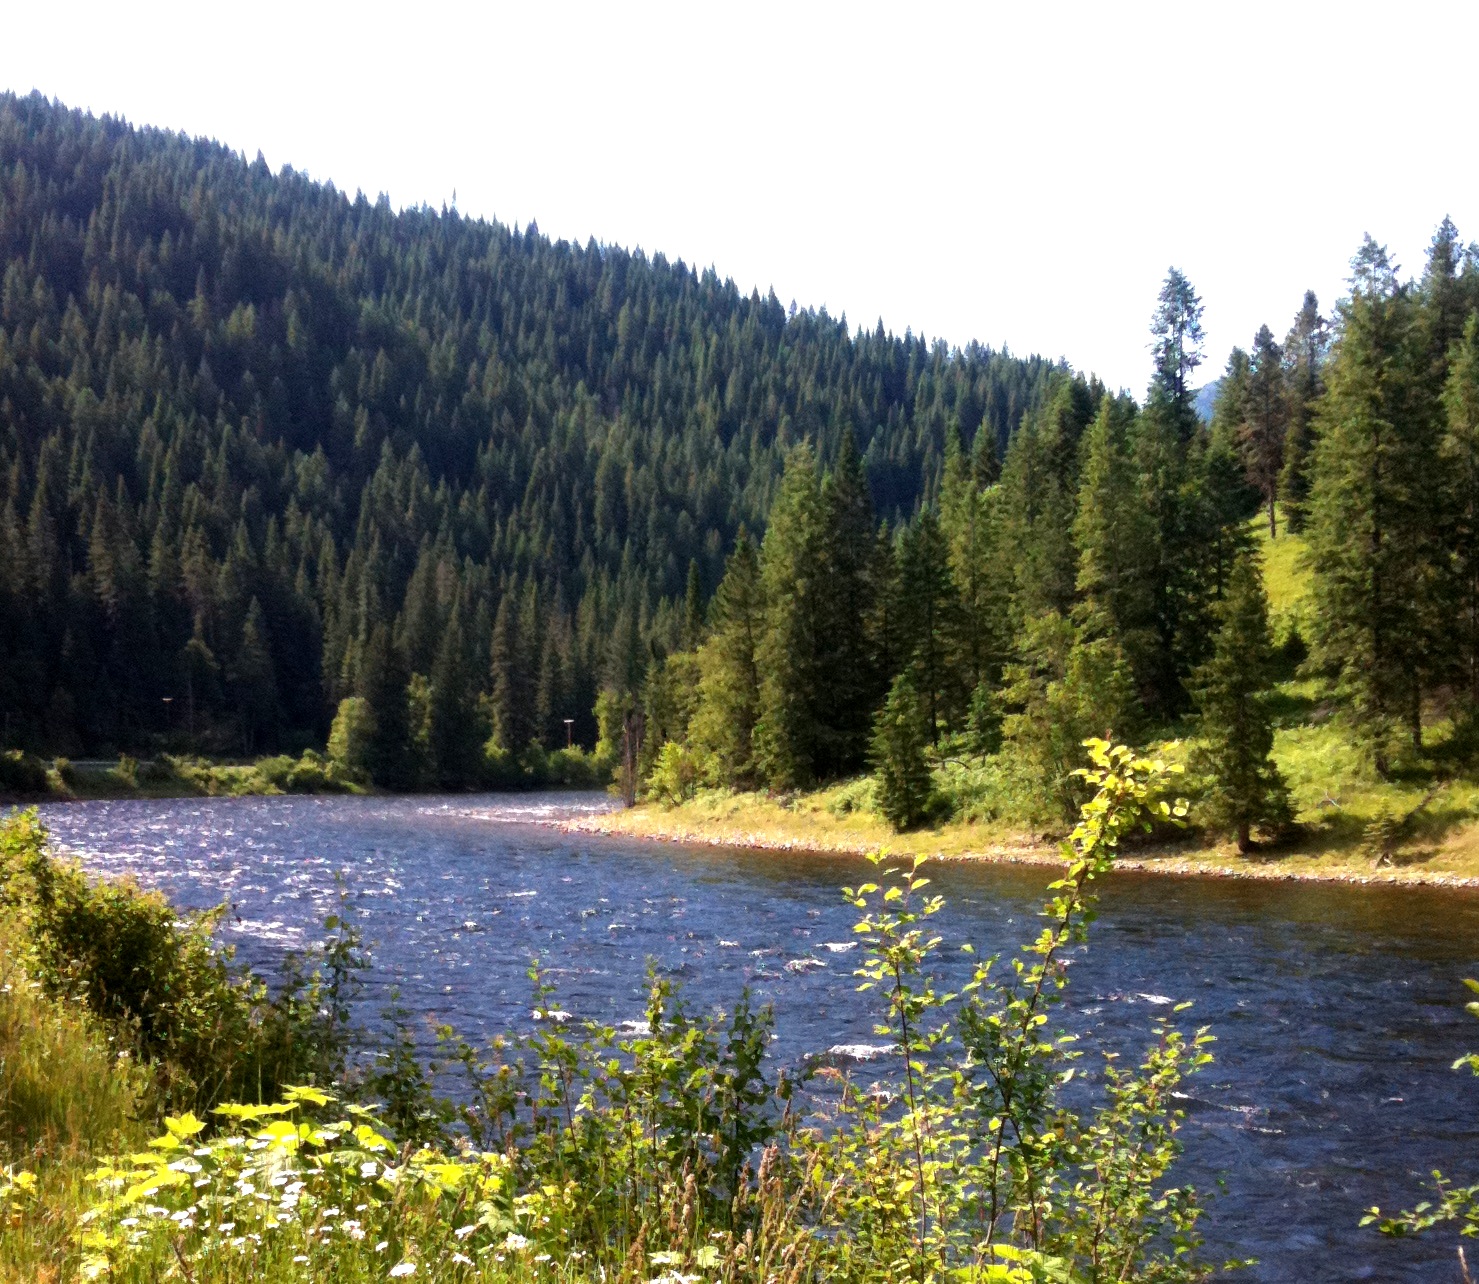 The Lochsa River